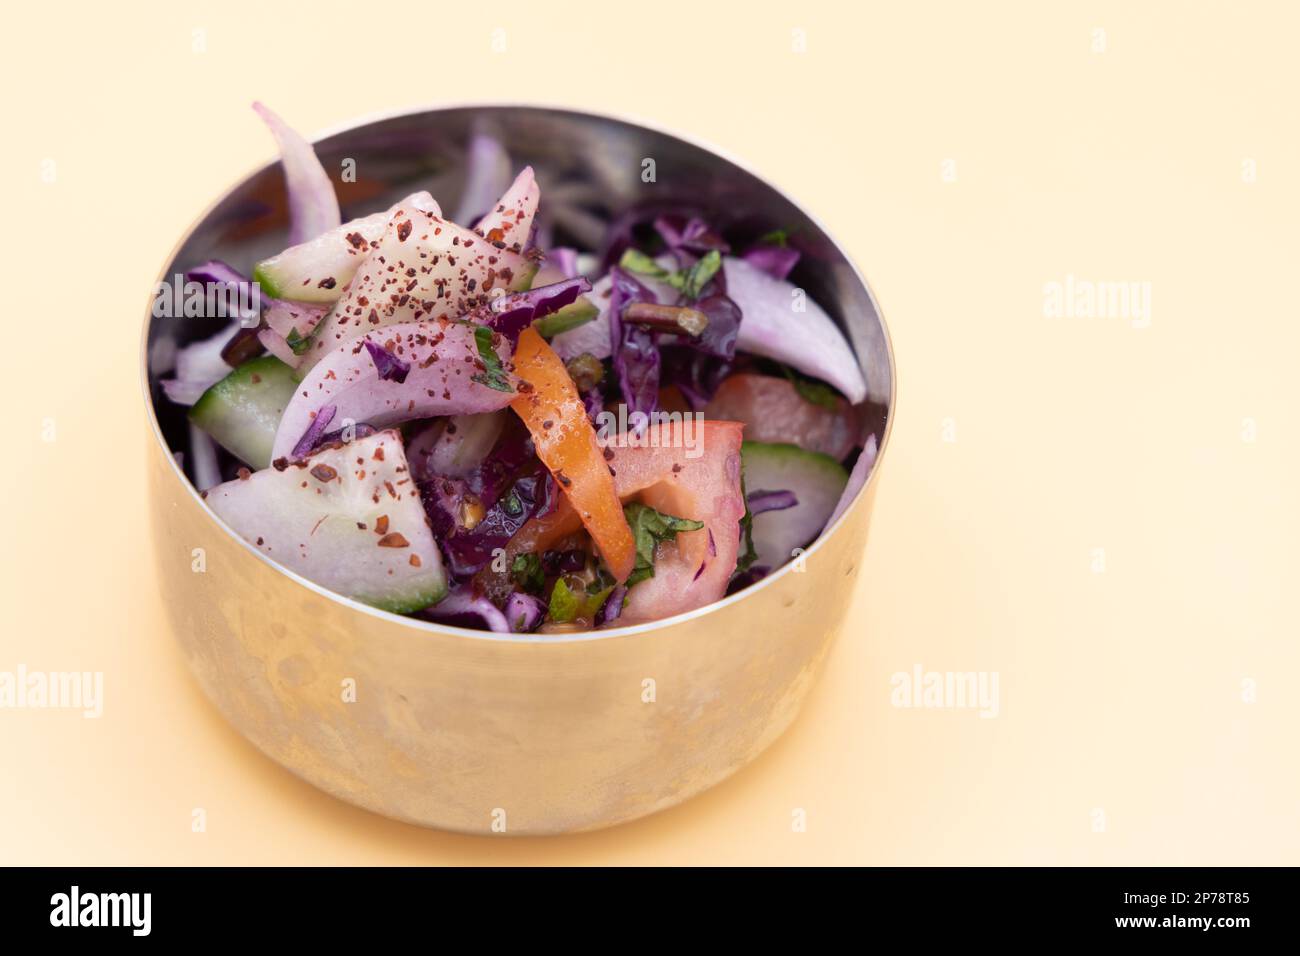 Salat: Traditioneller nahöstlicher Salat, gemischt mit Gurken, Tomaten, Petersilie, Olivenöl und Sumac-Gewürzen. Stockfoto